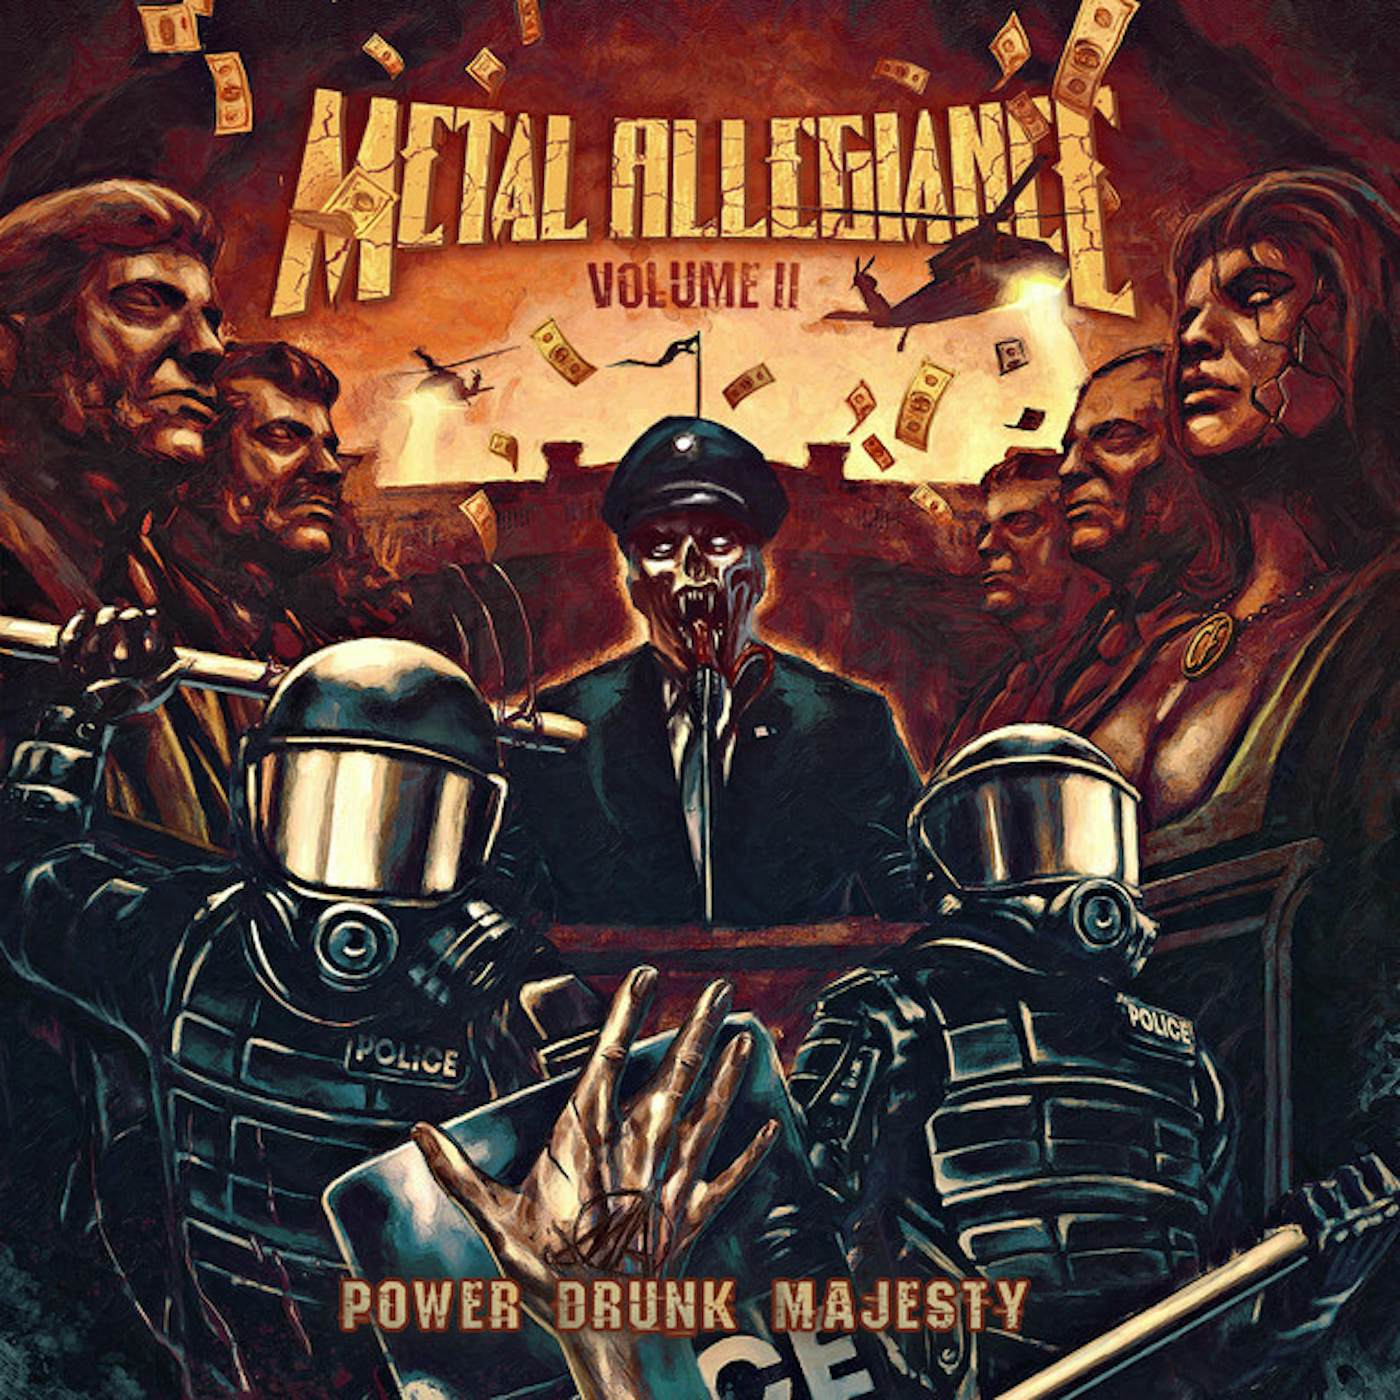 Metal Allegiance Volume II: Power Drunk Majesty Vinyl Record